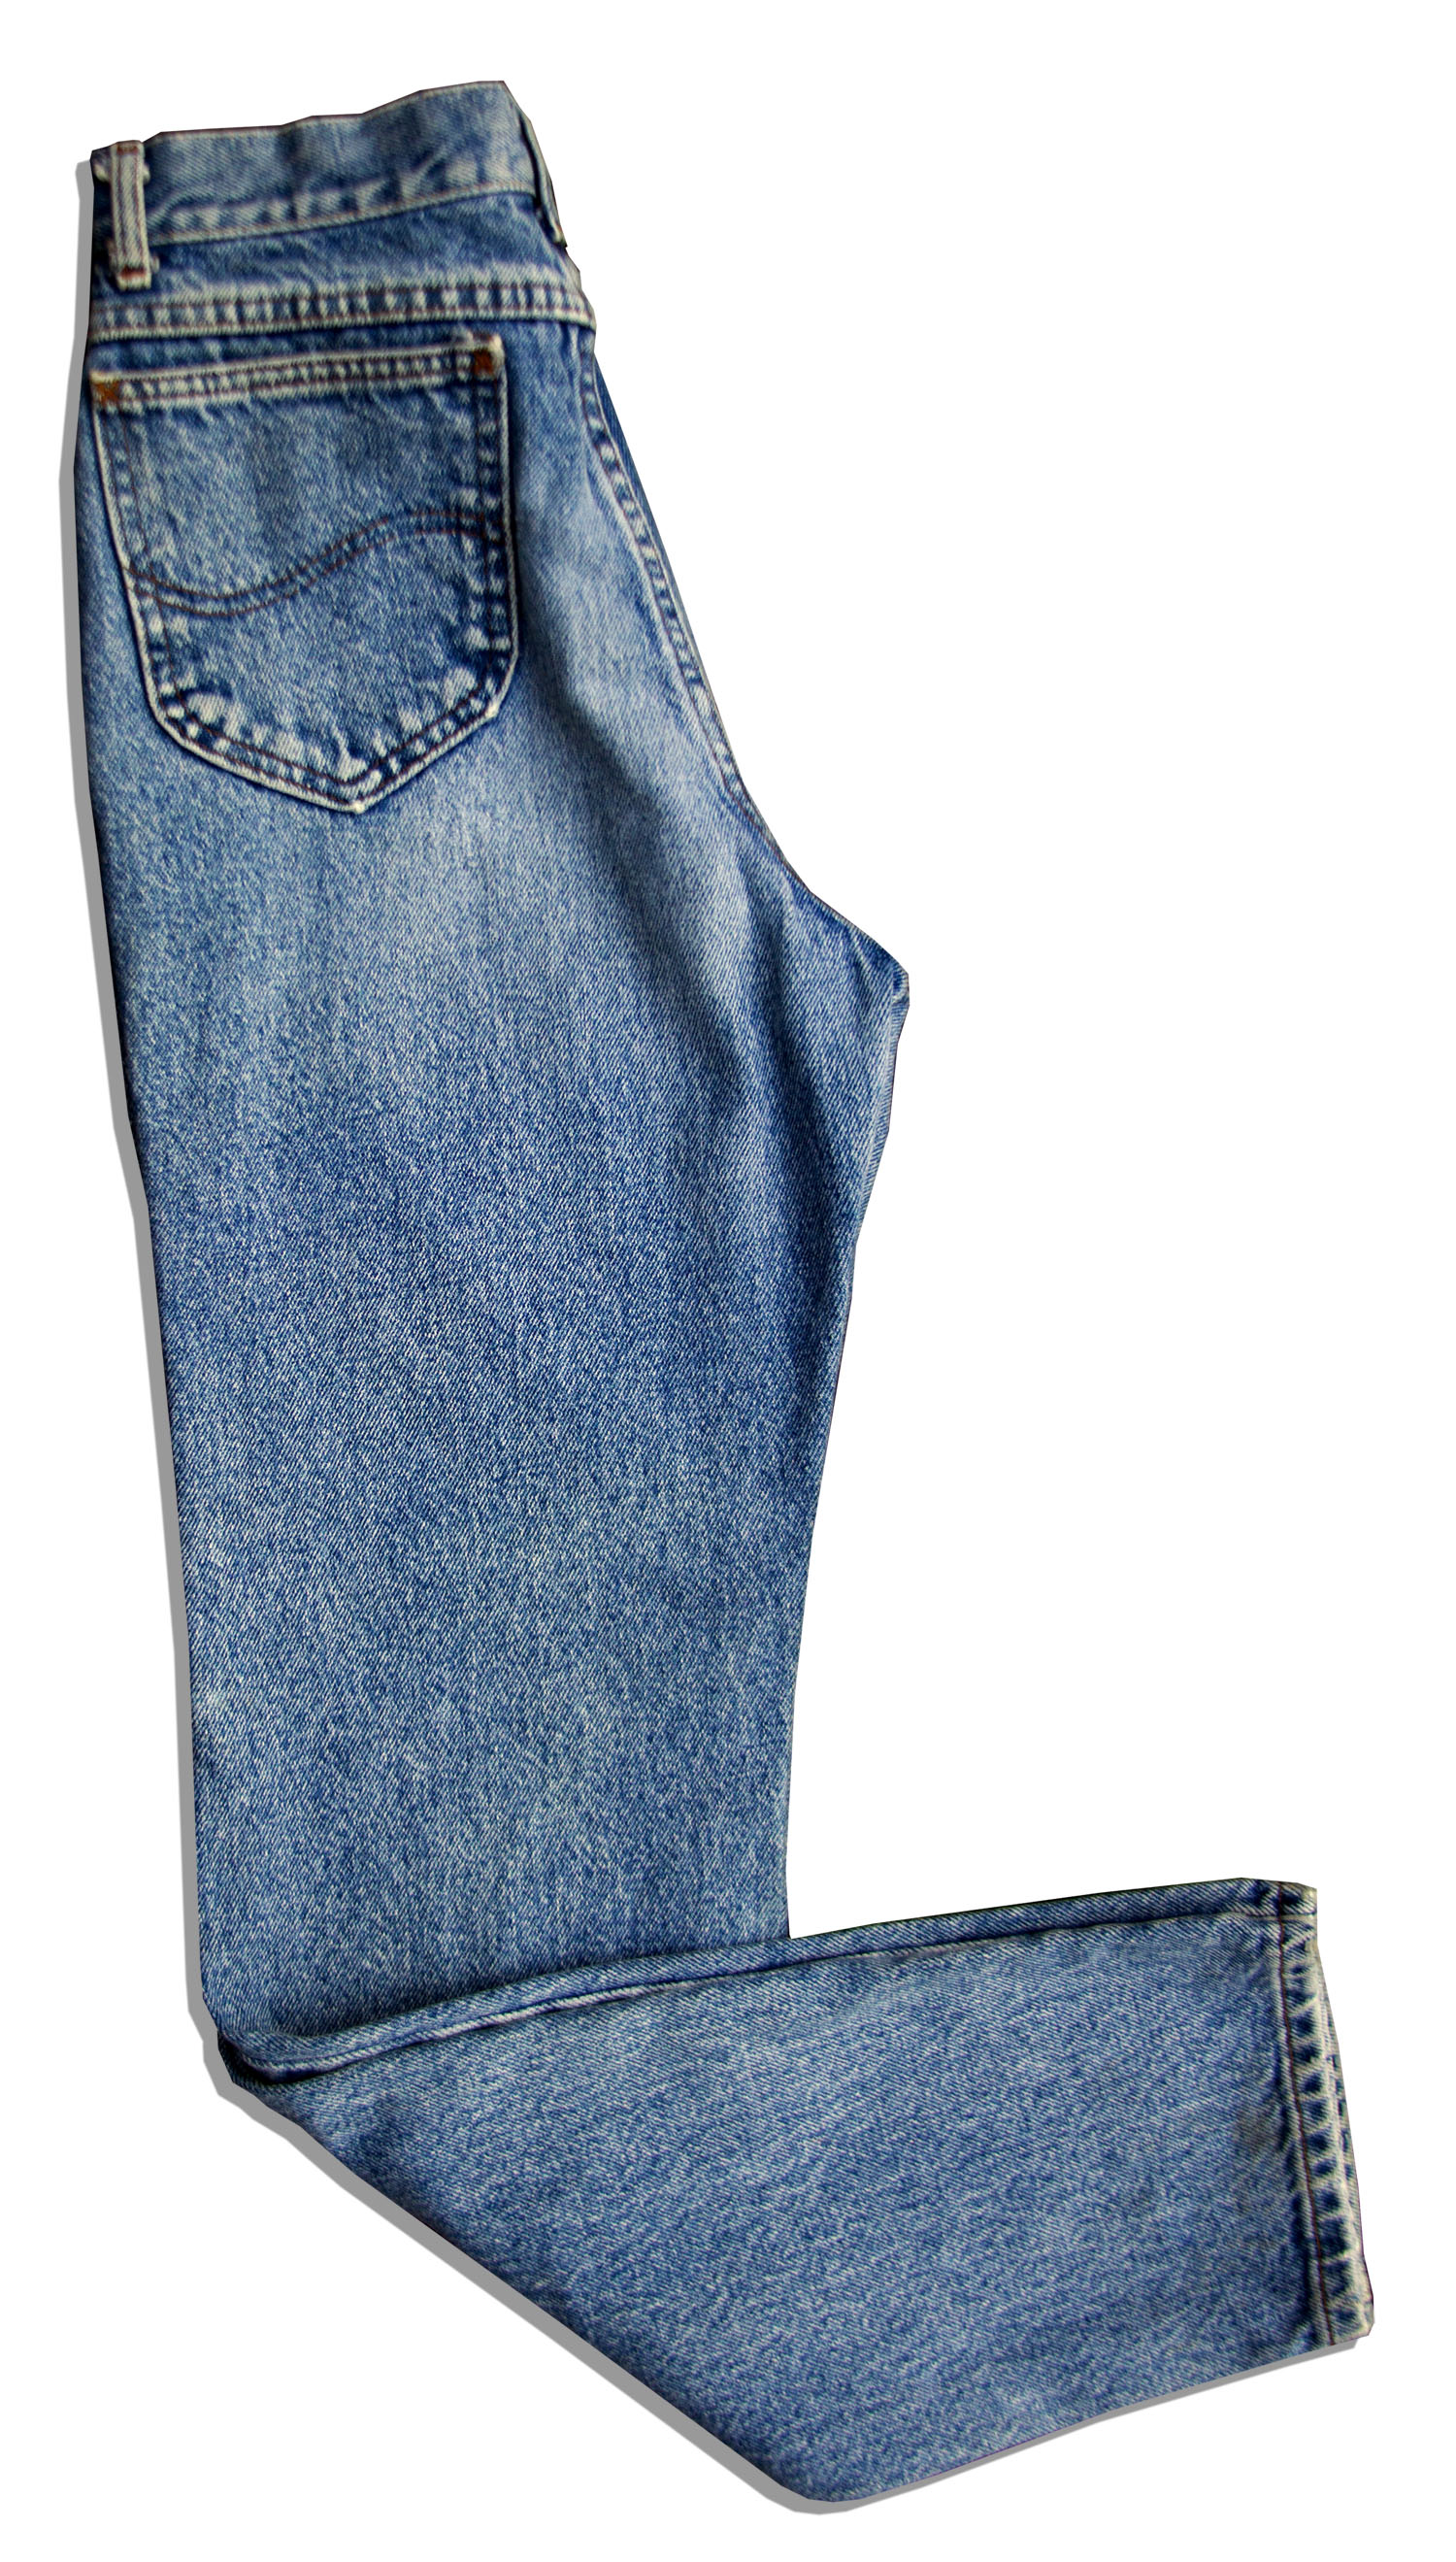 Lernen Oxid Heftig thelma and louise jeans Mach das Leben Praktisch Genau